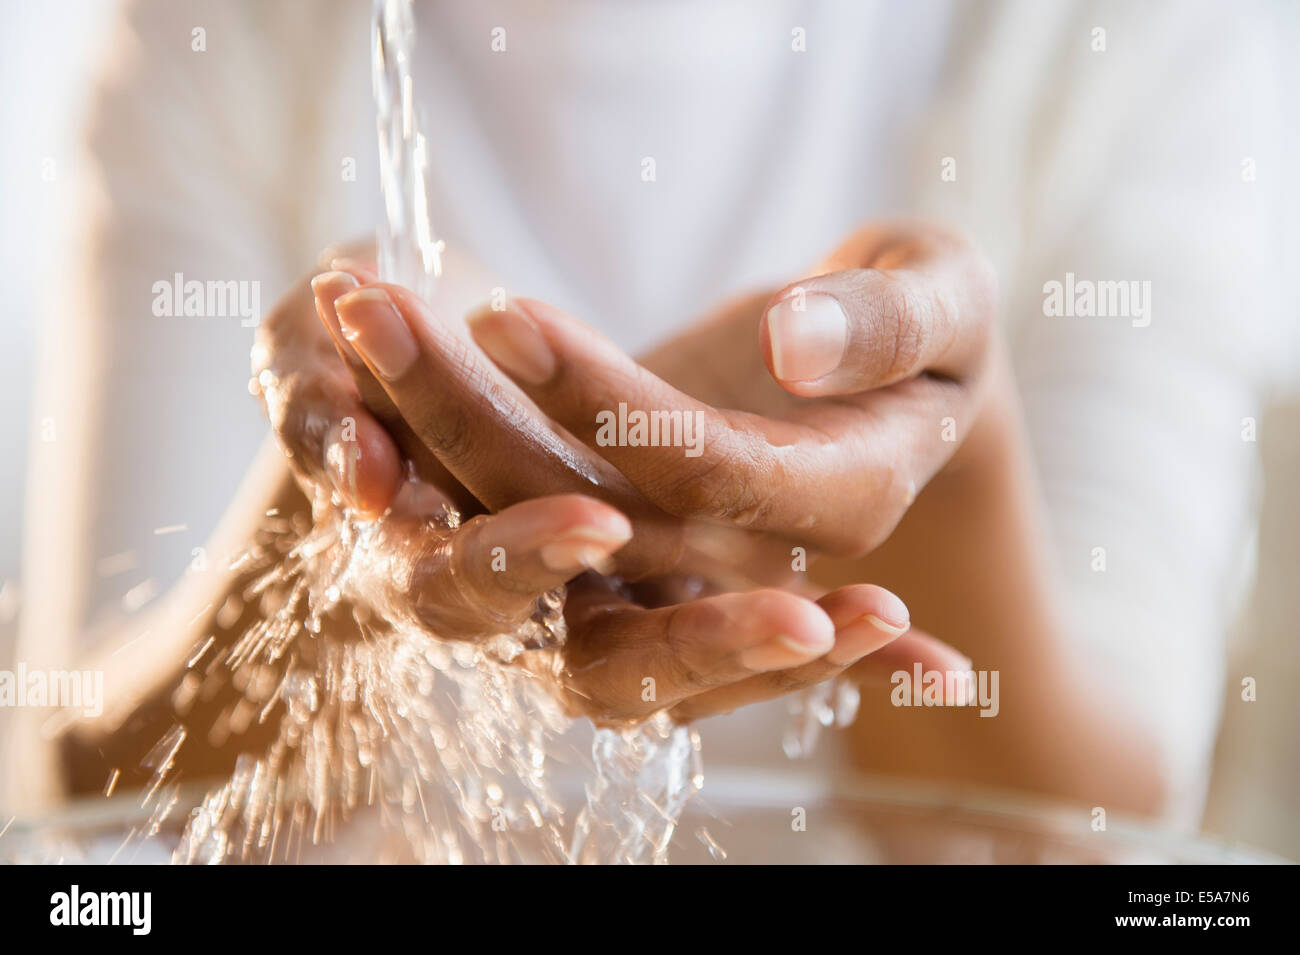 Razza mista donna lavando le mani Foto Stock